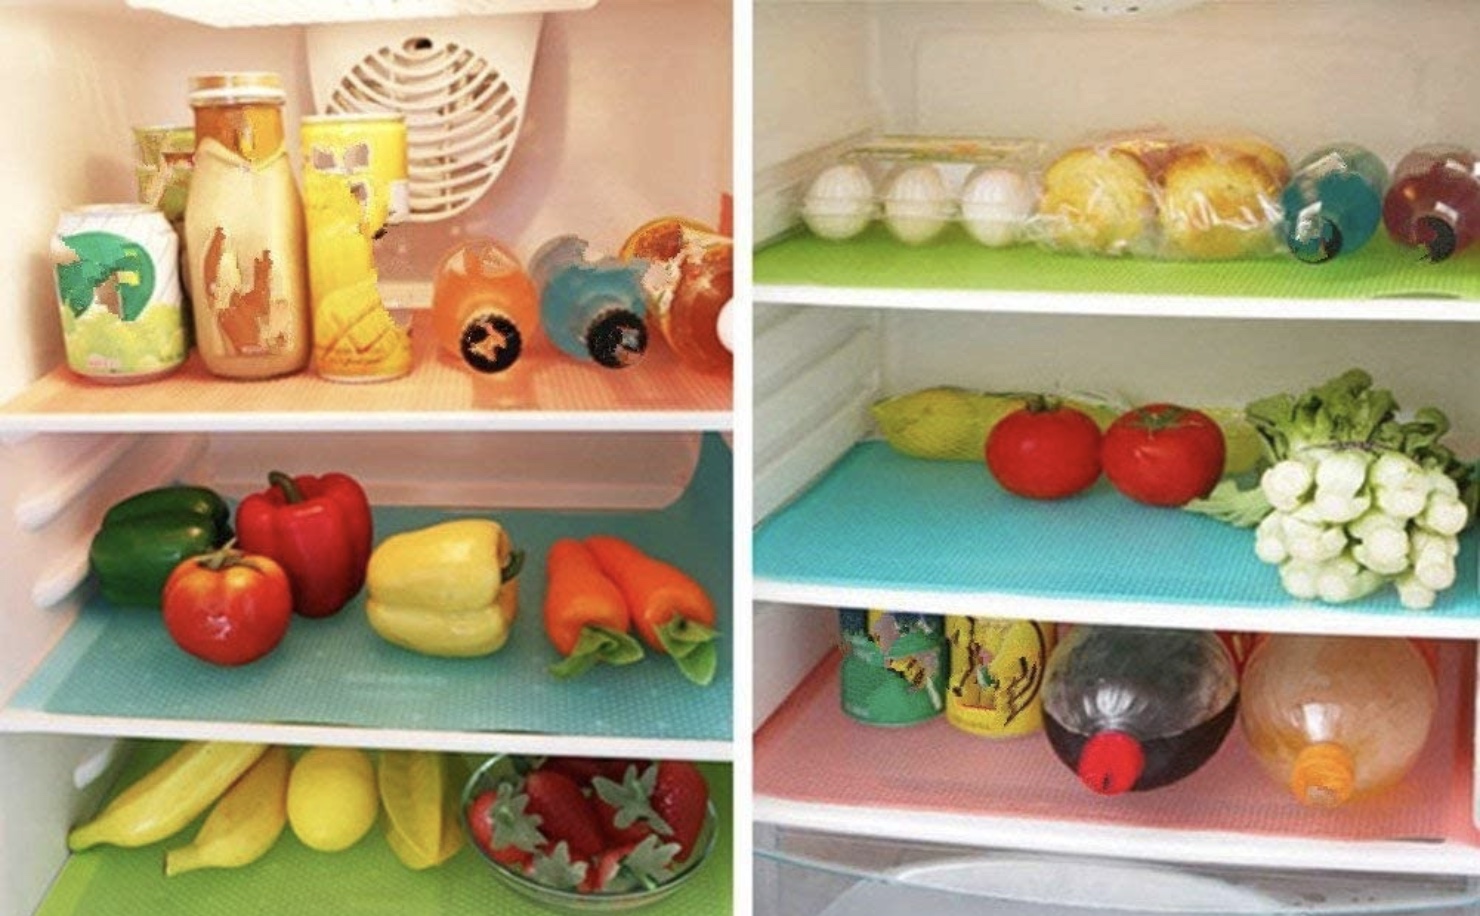 fridge liner cleaning tips